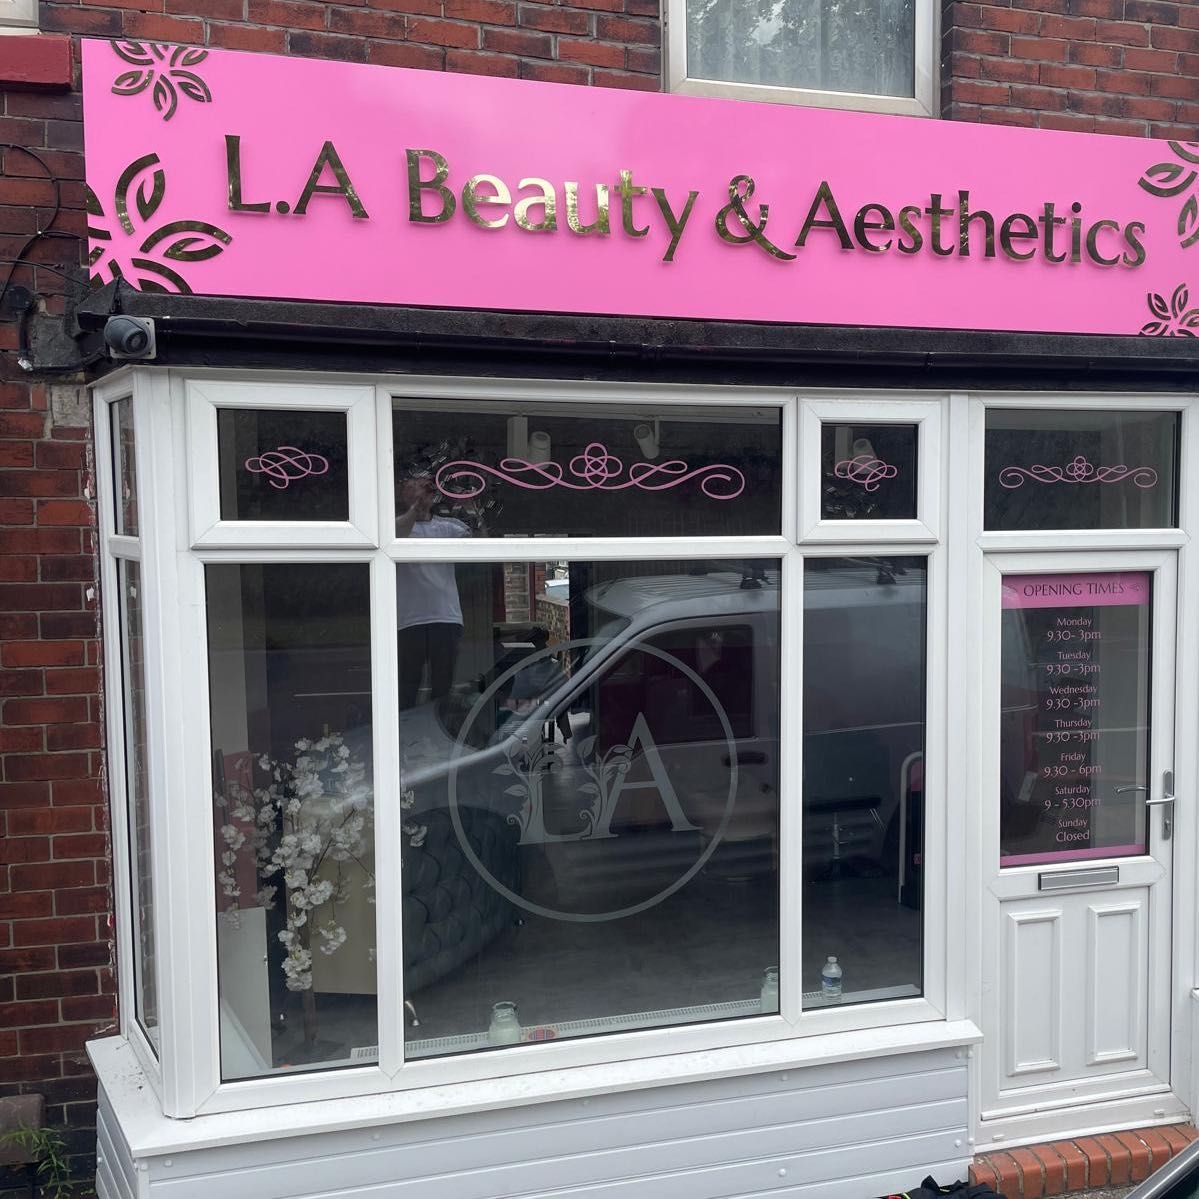 L.A Beauty & Aesthetics, 356 Leek road, ST1 3JL, Stoke-on-Trent